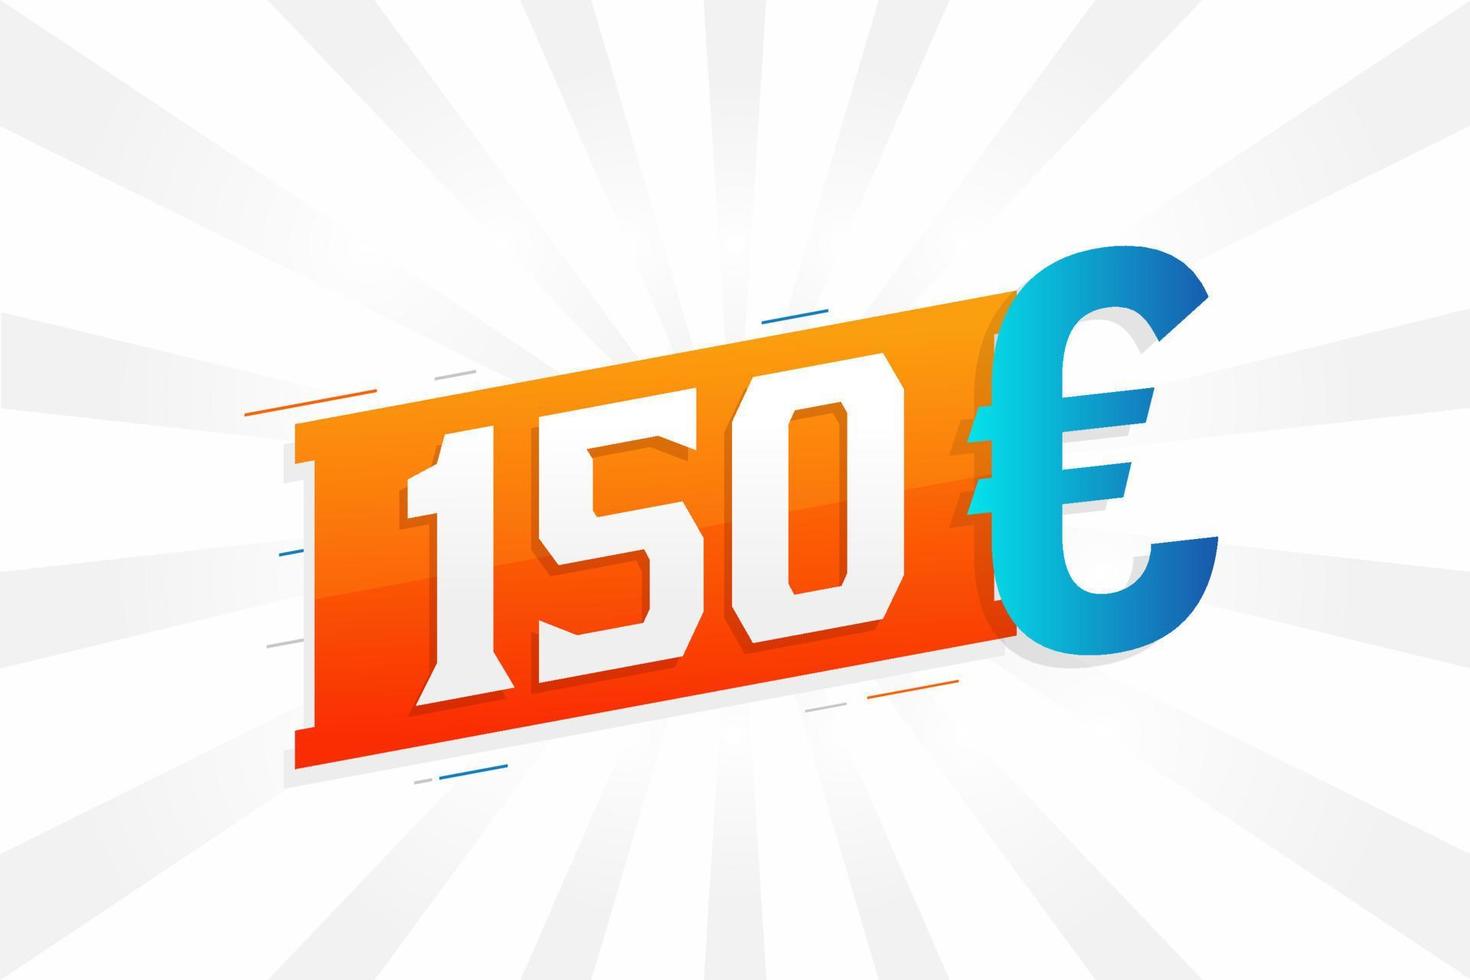 150-Euro-Währungsvektor-Textsymbol. 150 Euro Geldvorratvektor der Europäischen Union vektor